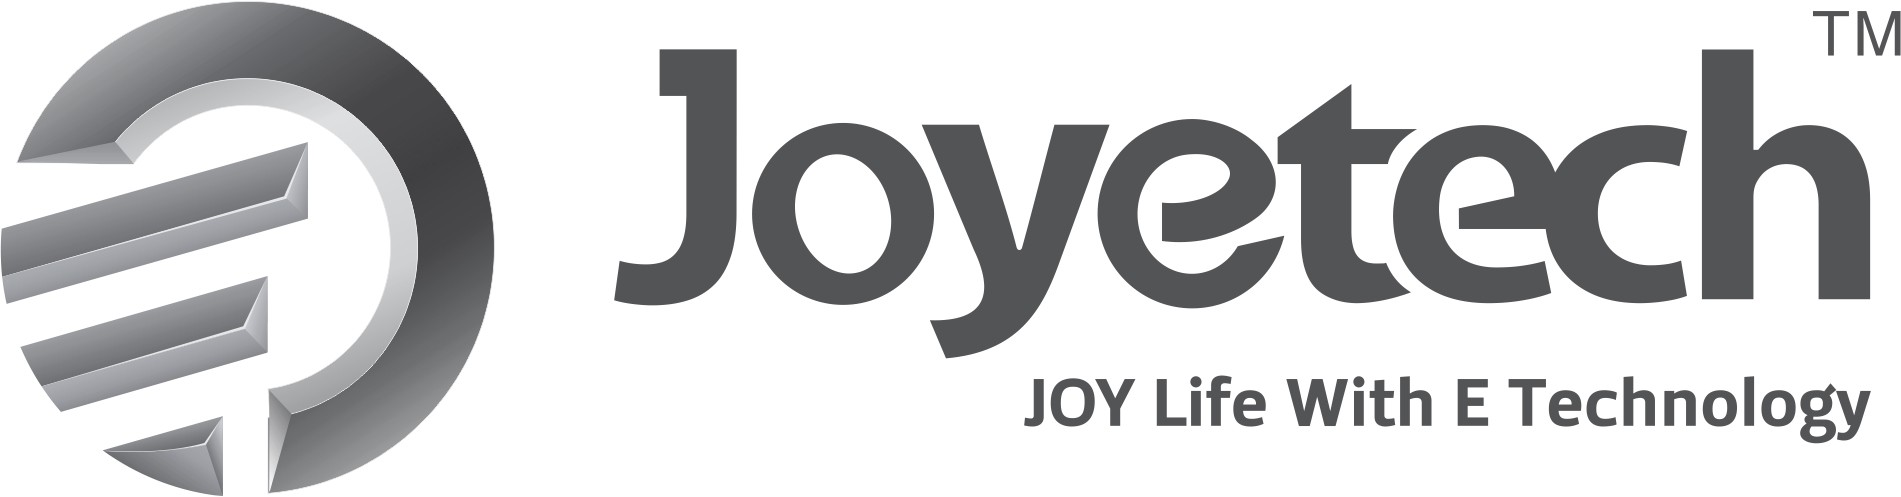 joyetech-logo